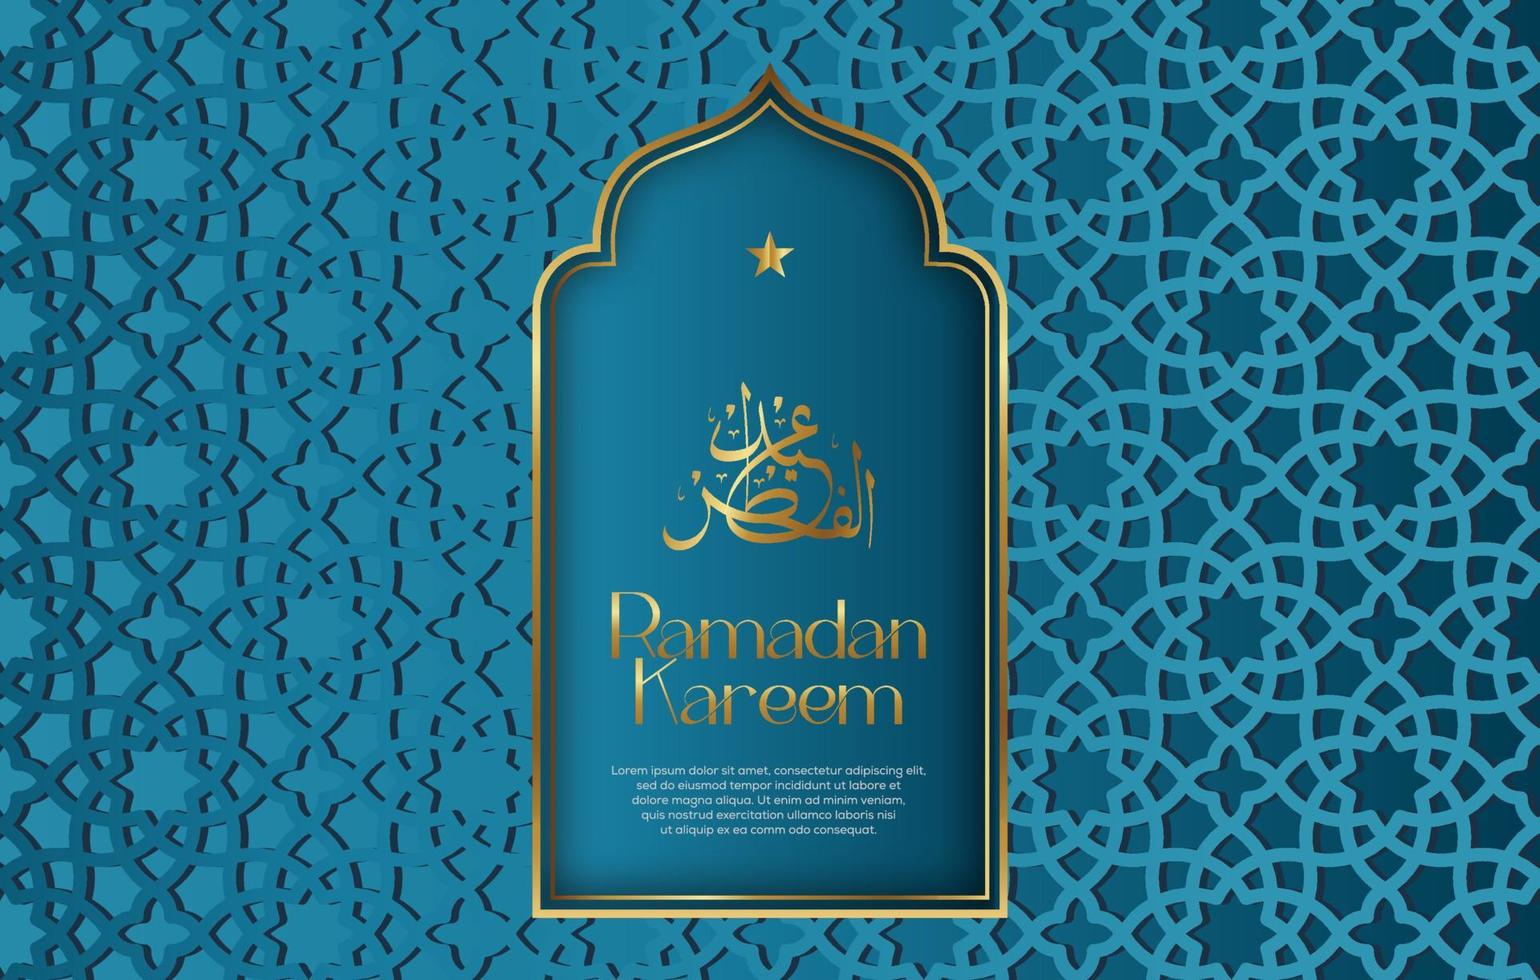 prime vecteur islamique style Ramadan kareem et eid décoratif Contexte